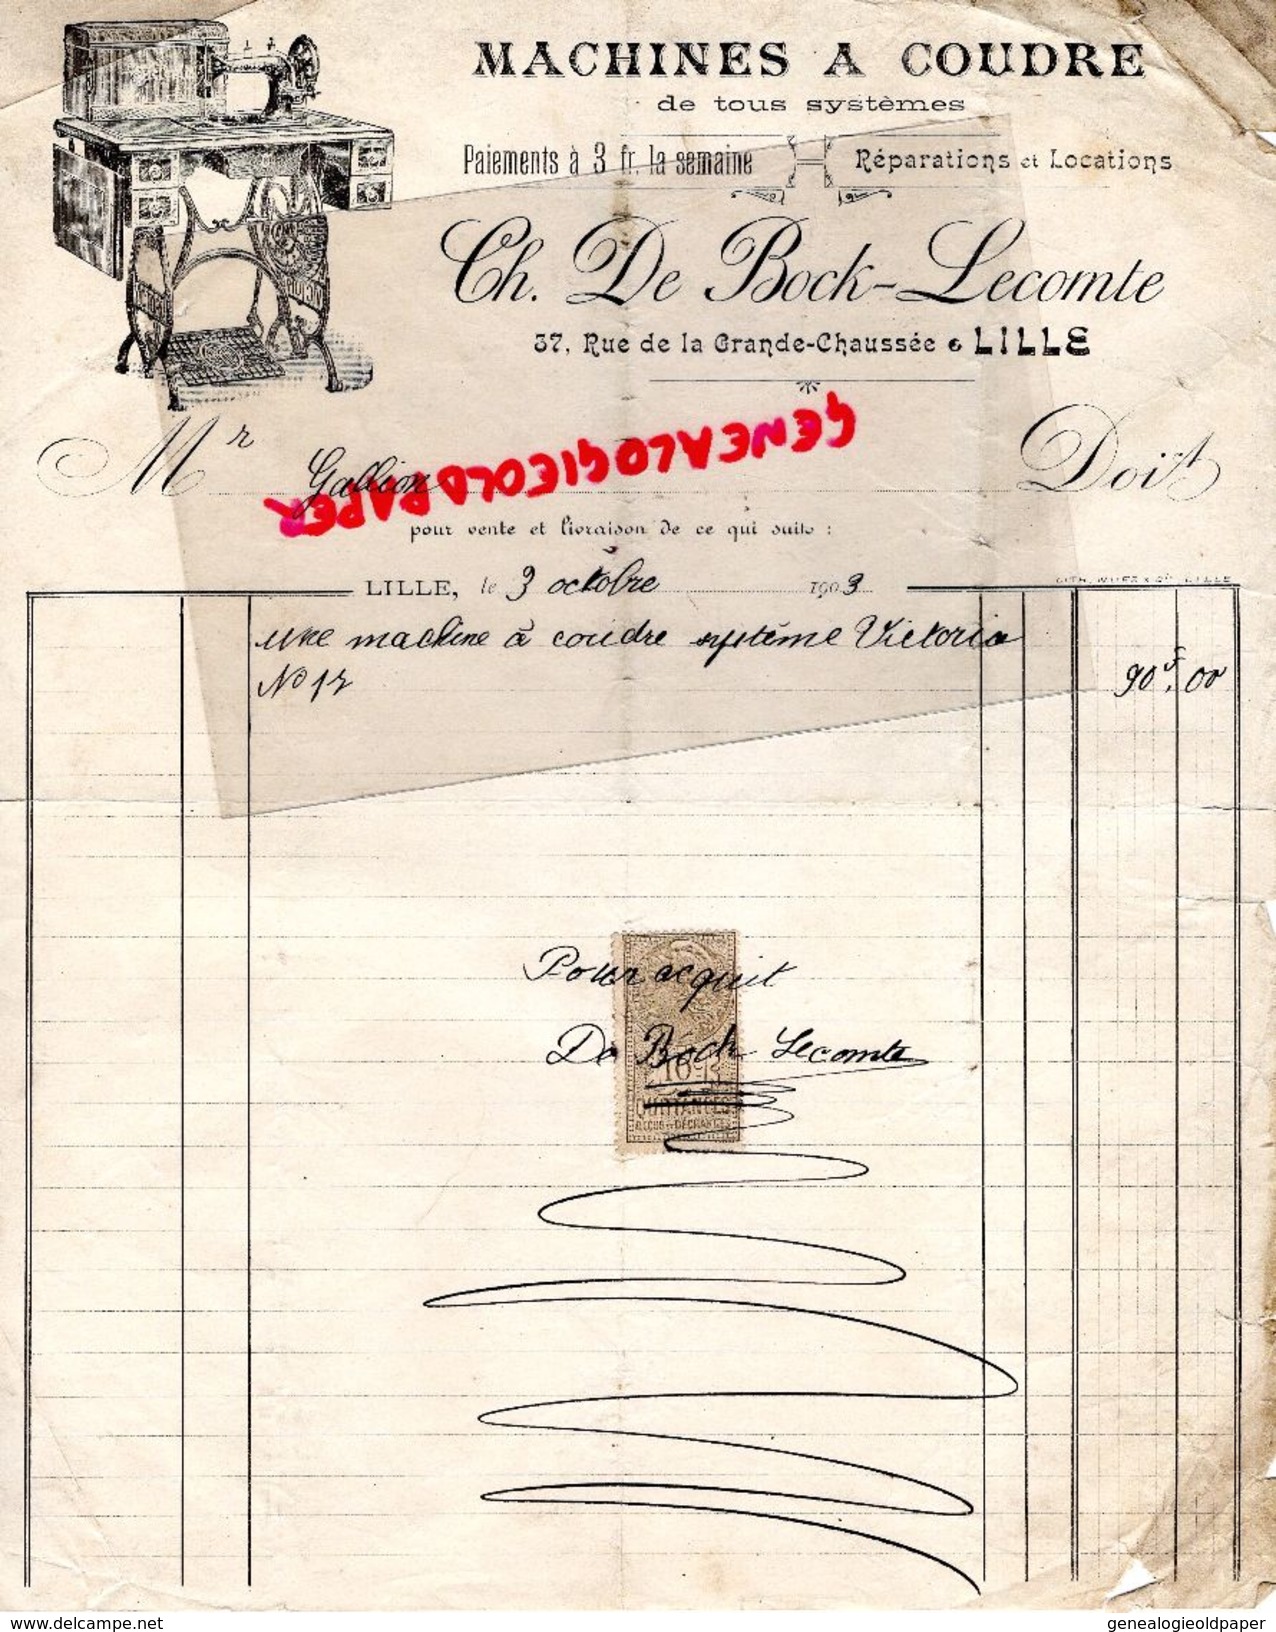 59- LILLE- RARE FACTURE CH. DE BOCK-LECOMTE-MACHINES A COUDRE -MACHINE A COUDRE-37 RUE DE LA GRANDE CHAUSSEE-1903 - Petits Métiers